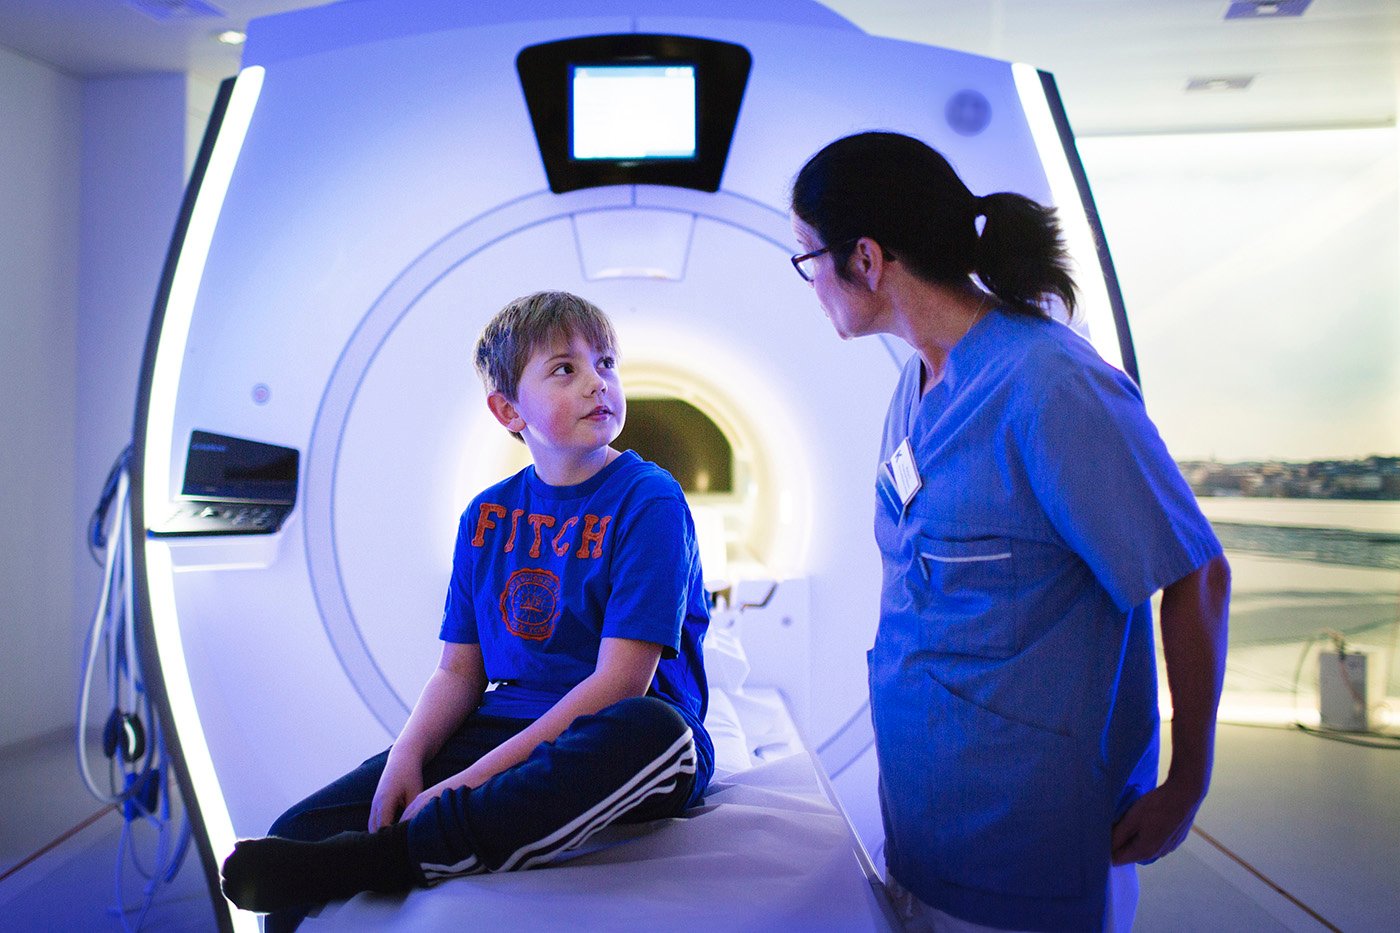 bilden visar en pojke som sitter framför en magnetröntgenkamera. Bredvid pojken står en kvinna i sjukvårdsklädsel. Hon har glasögon och tittar på pojken.